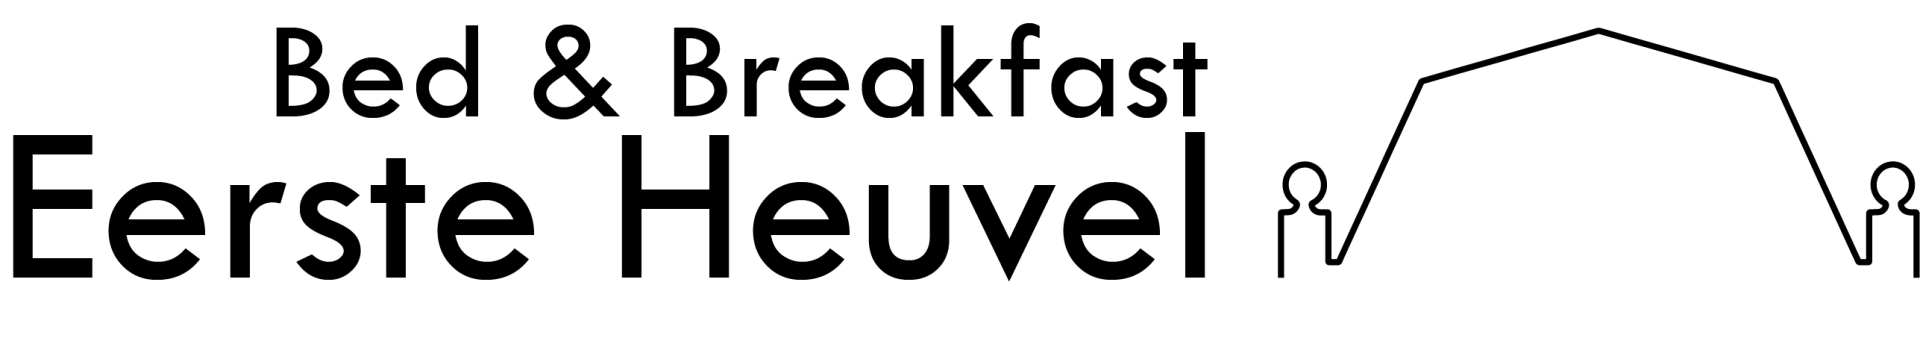 Bed & Breakfast Eerste Heuvel